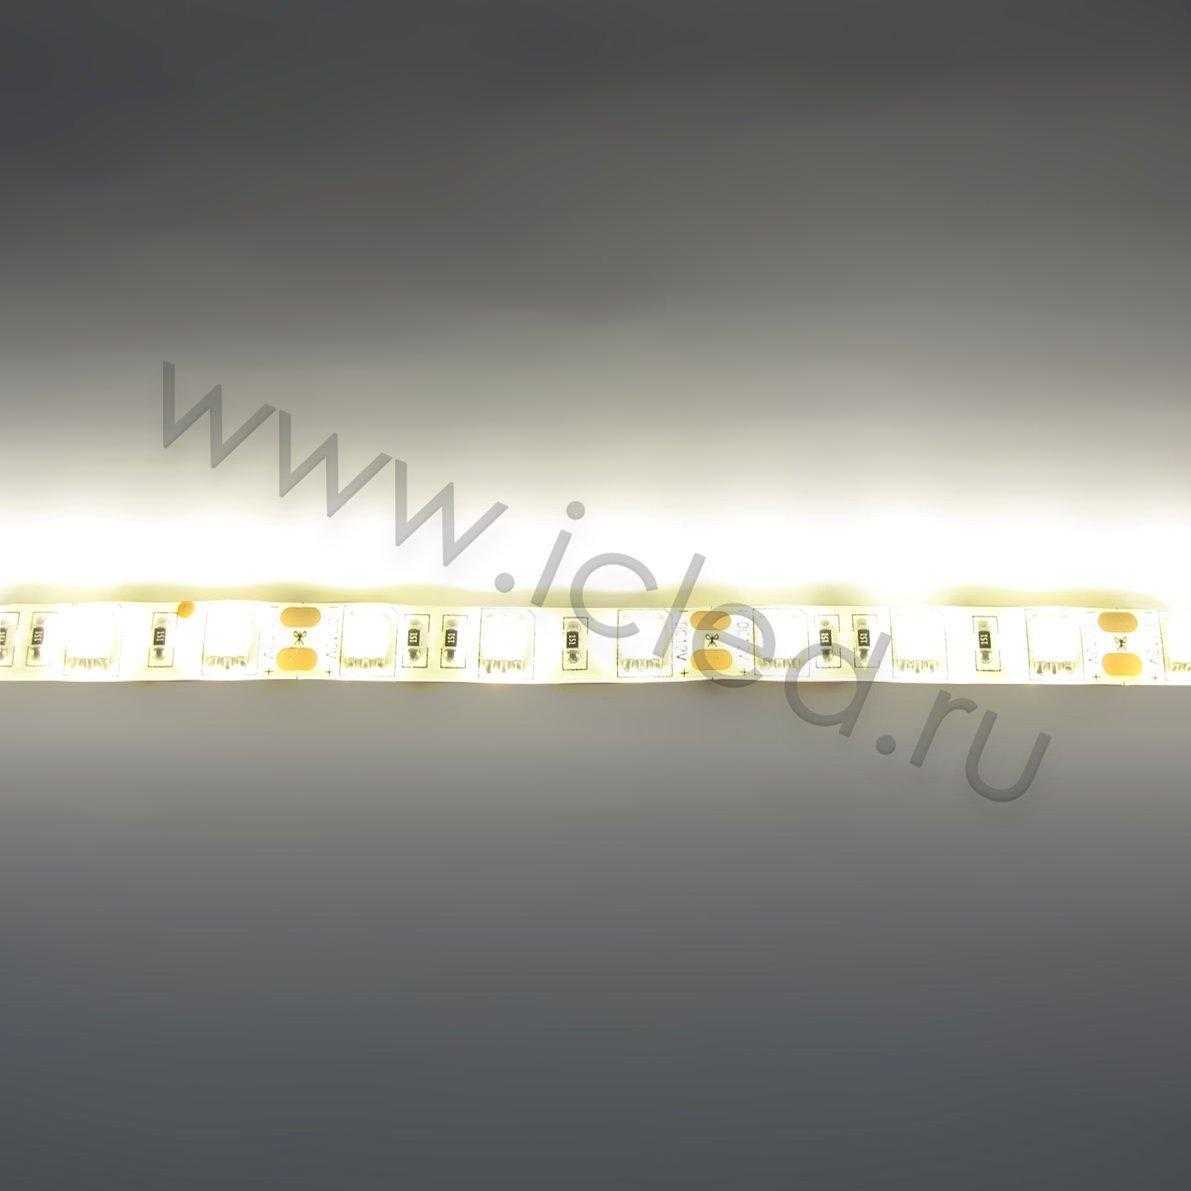 Влагозащищенные светодиодные ленты Светодиодная лента Standart class, 5050, 60led/m, Warm White, 12V, IP65 Icled